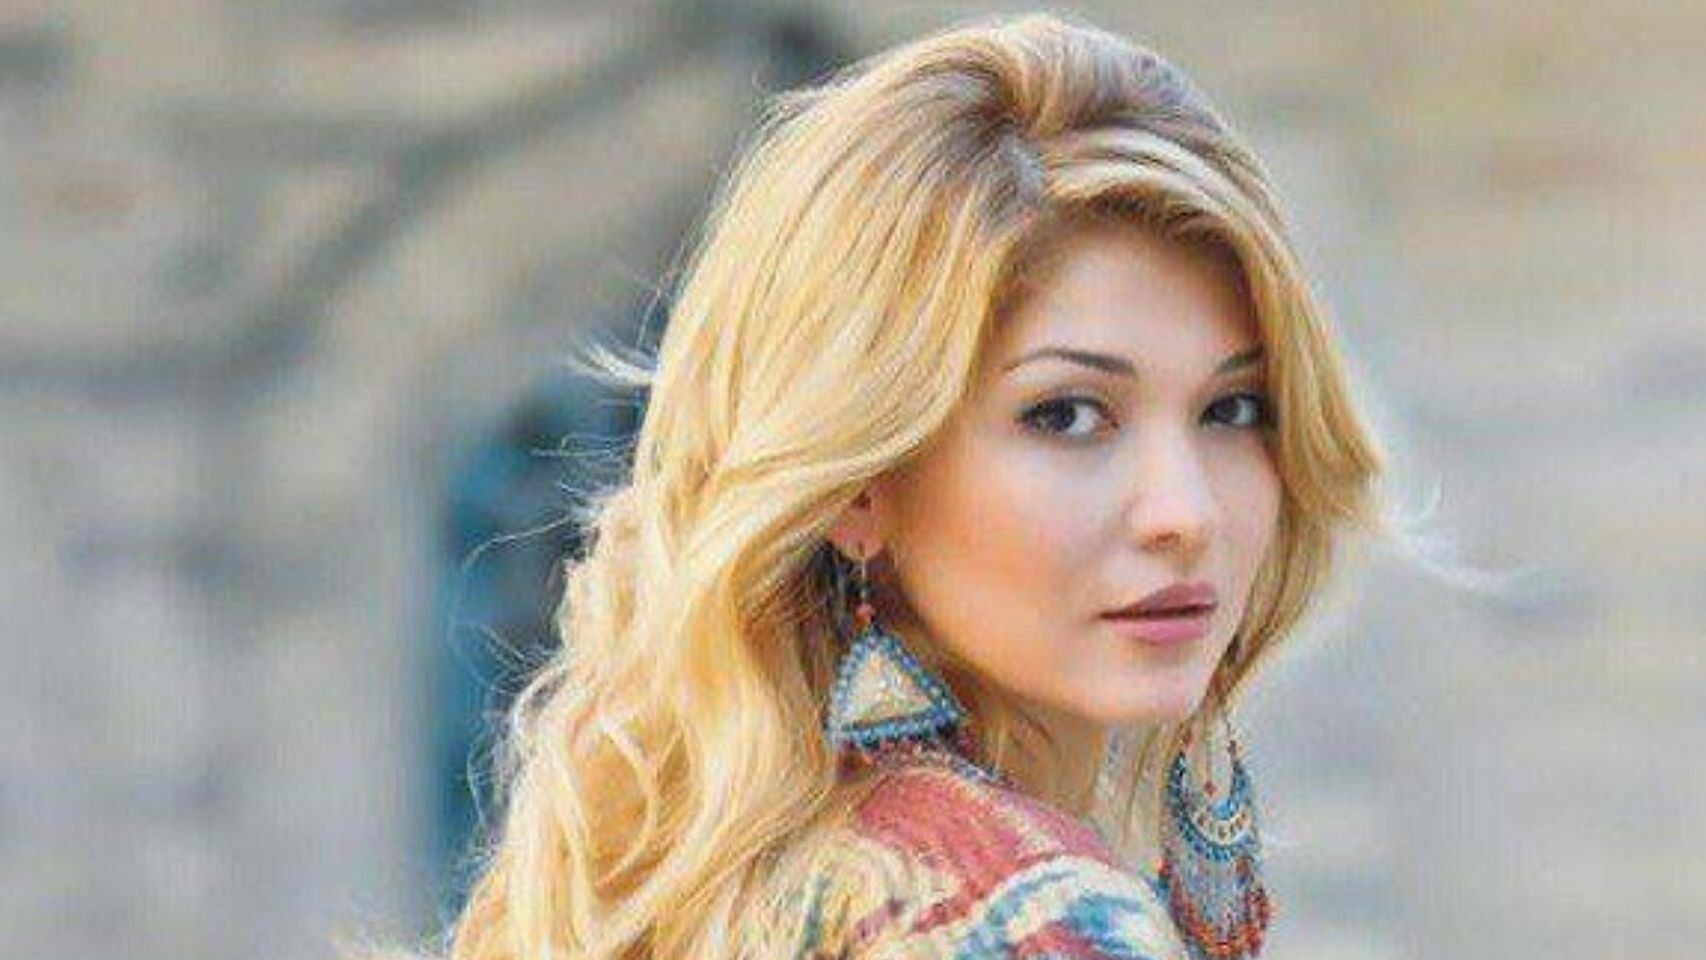 Being in prison, "Uzbek princess" Gulnara Karimova tries to saves her millions in Switzerland